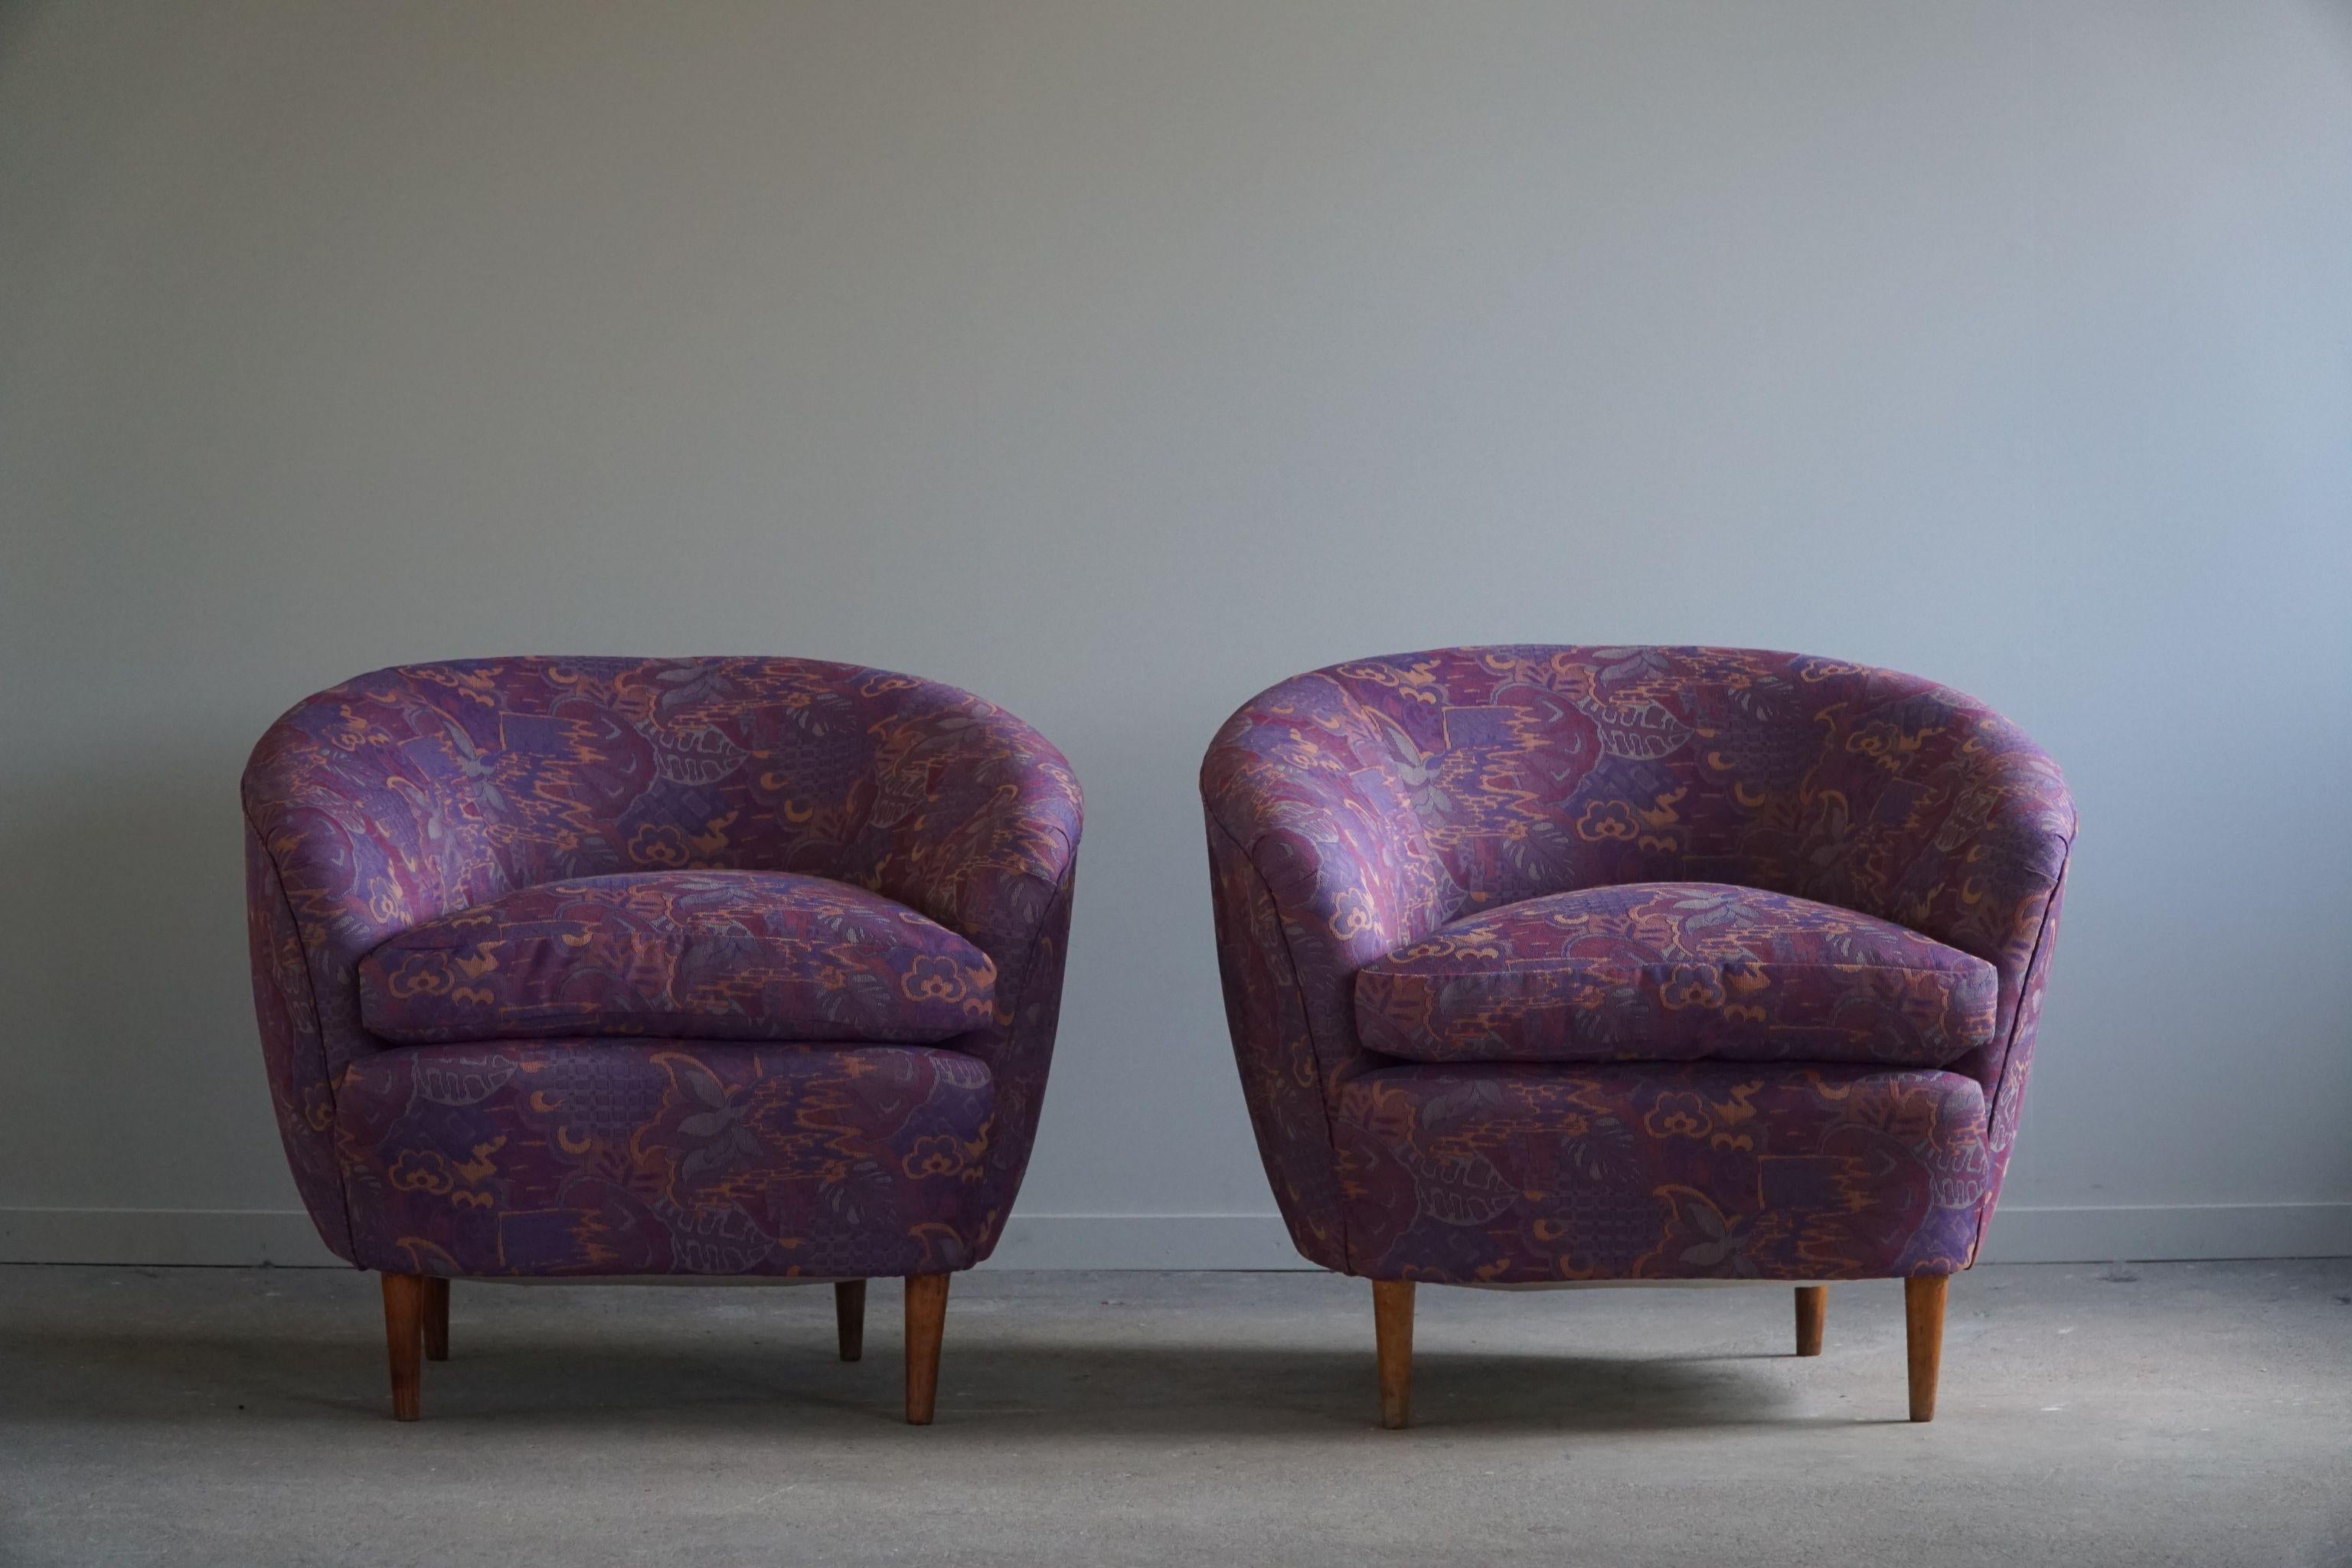 Un magnífico par de sillas club curvadas, retapizadas en una lujosa tela vintage almacenada de los años 80. Este bonito tejido estampado complementa realmente las suaves curvas. Diseñado por el mundialmente conocido diseñador italiano Gio Ponti para